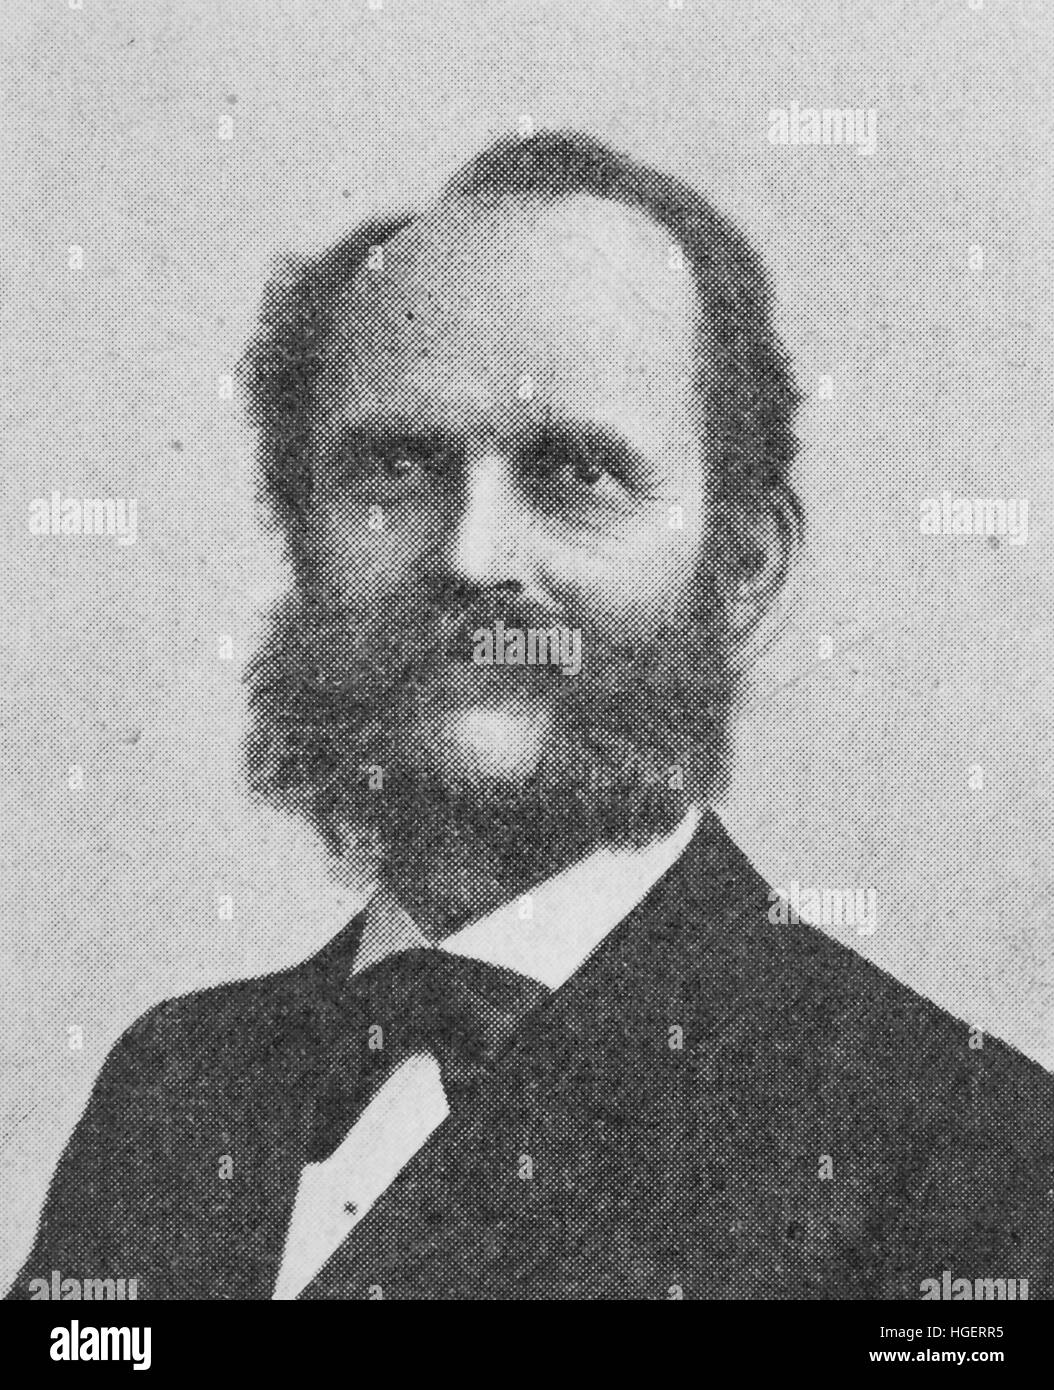 Claus Koepcke, auch Köpke, geboren 28. Oktober 1831; 21. November 1911 starb, war ein deutscher Bauingenieur und Wissenschaftler, Reproduktion eines Fotos aus dem Jahr 1895, digital verbessert. Stockfoto